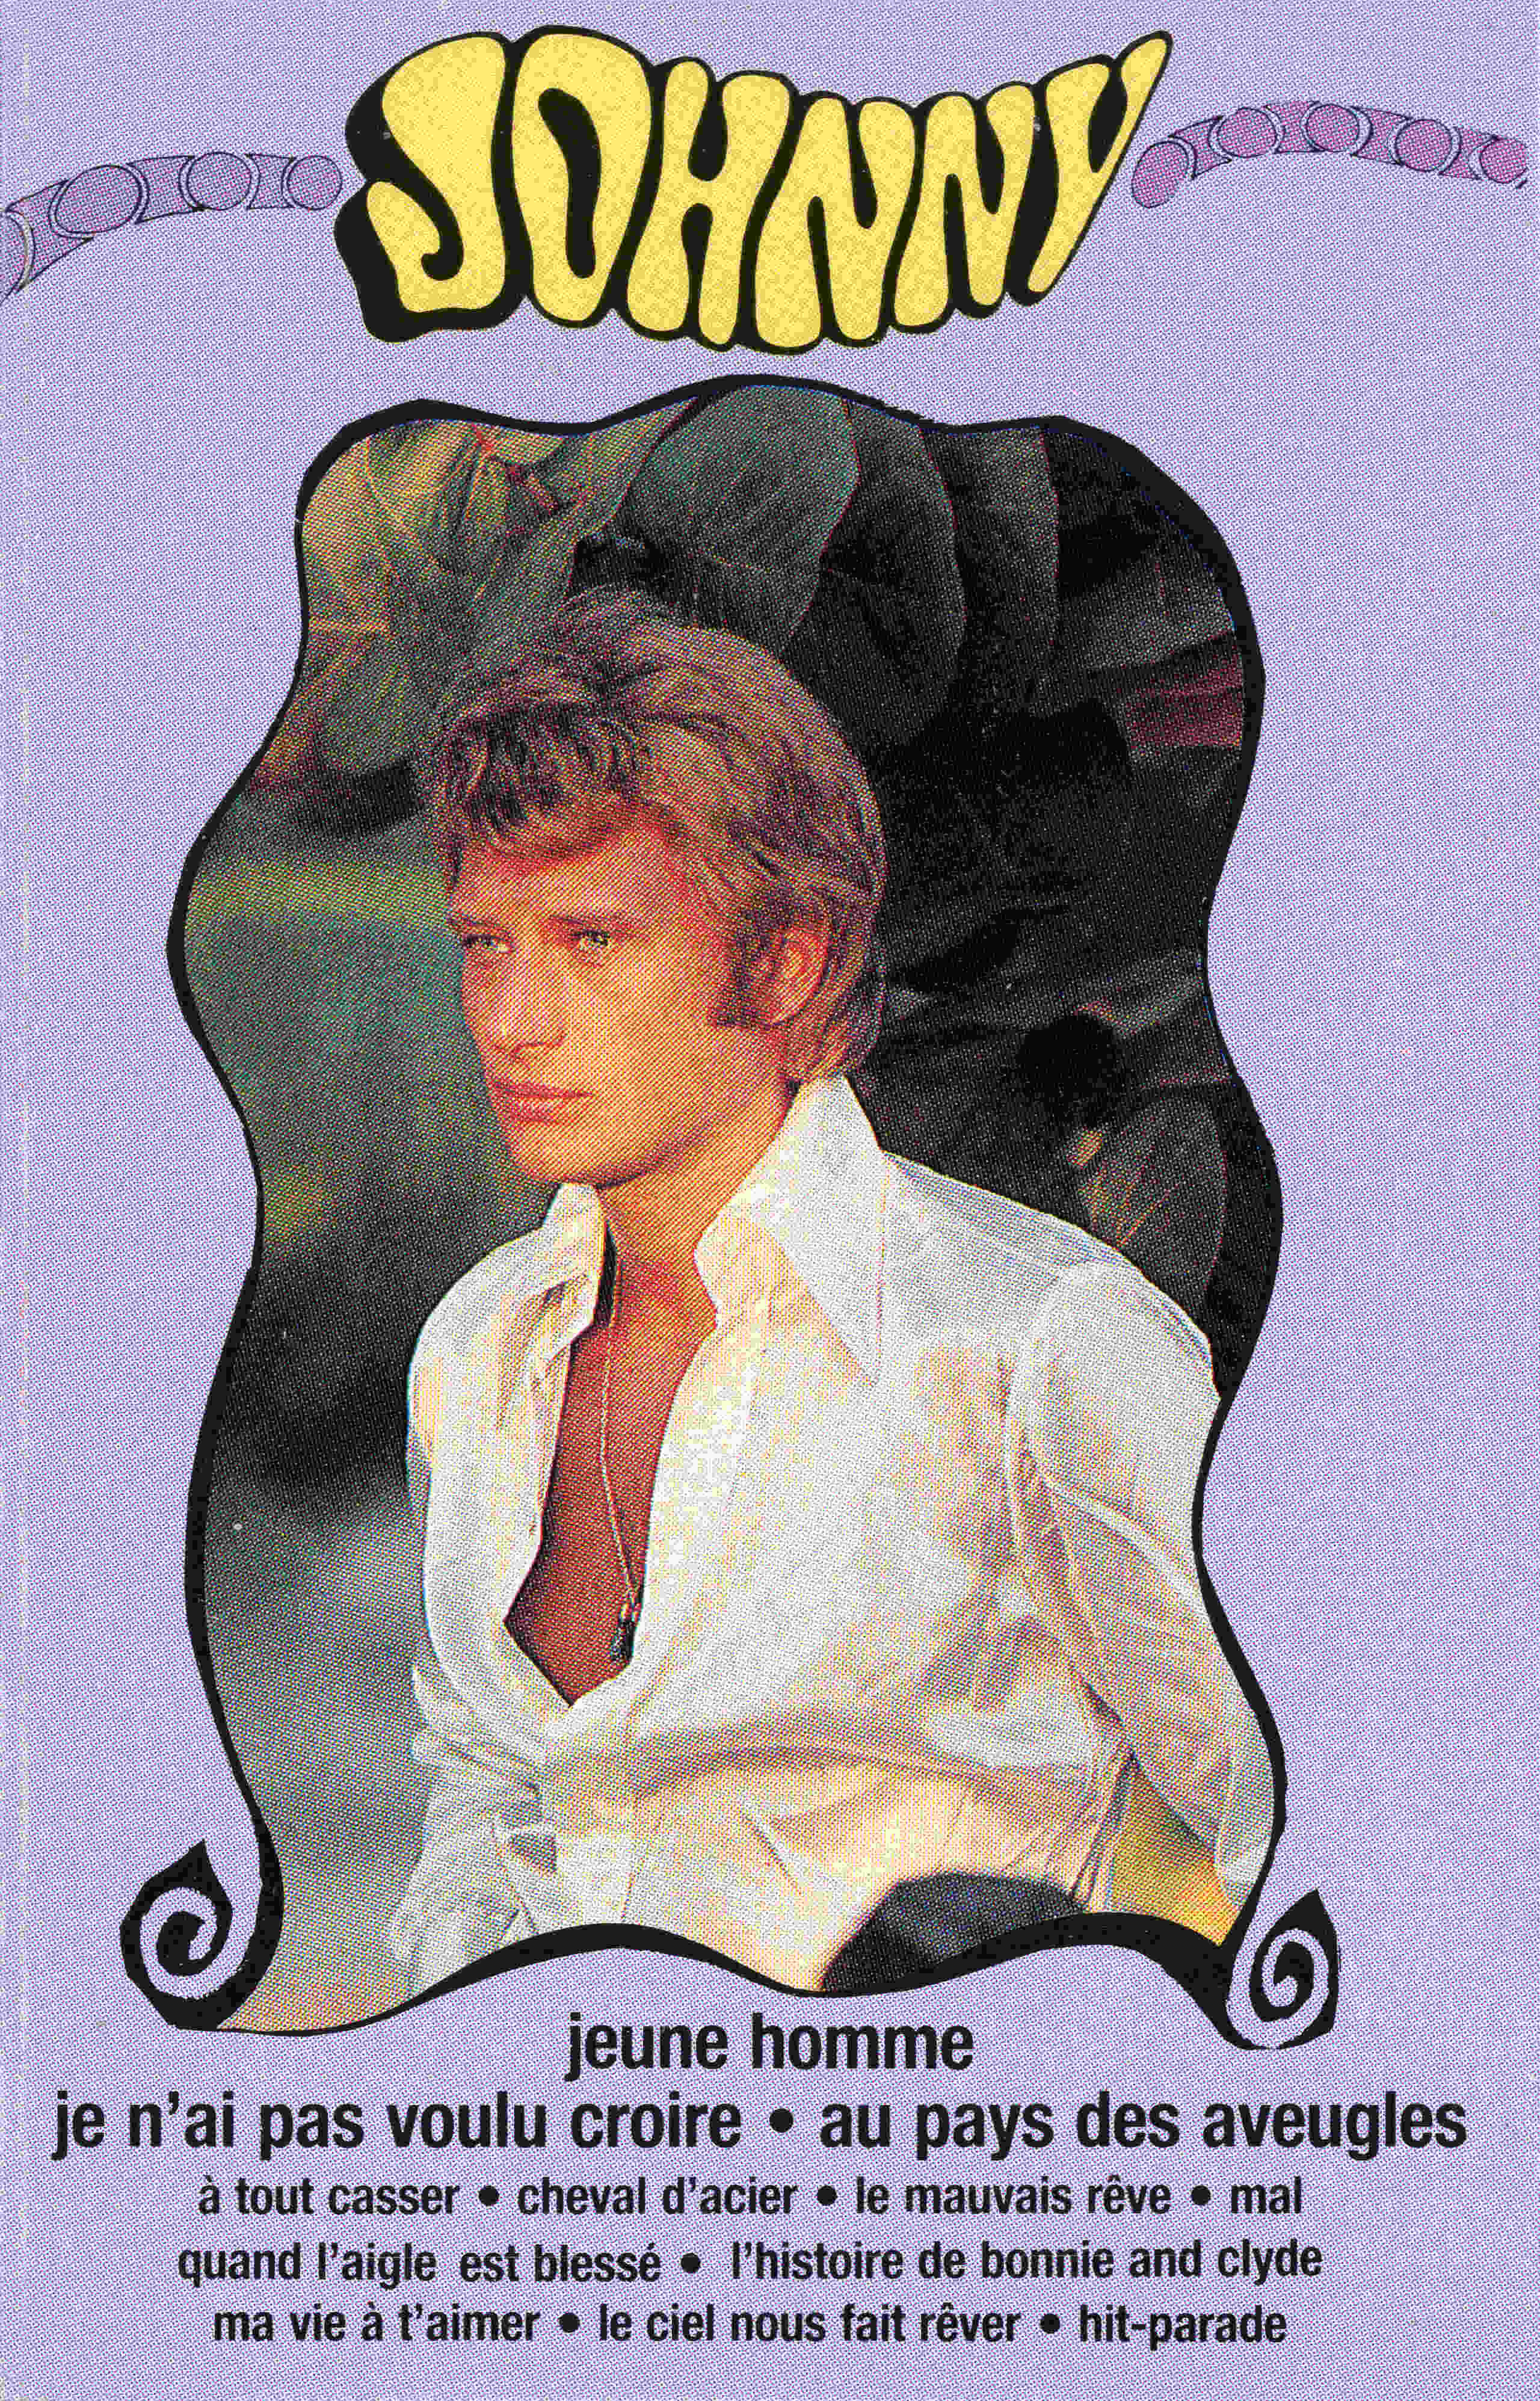 Cassette 10 Jeune homme 1968-011